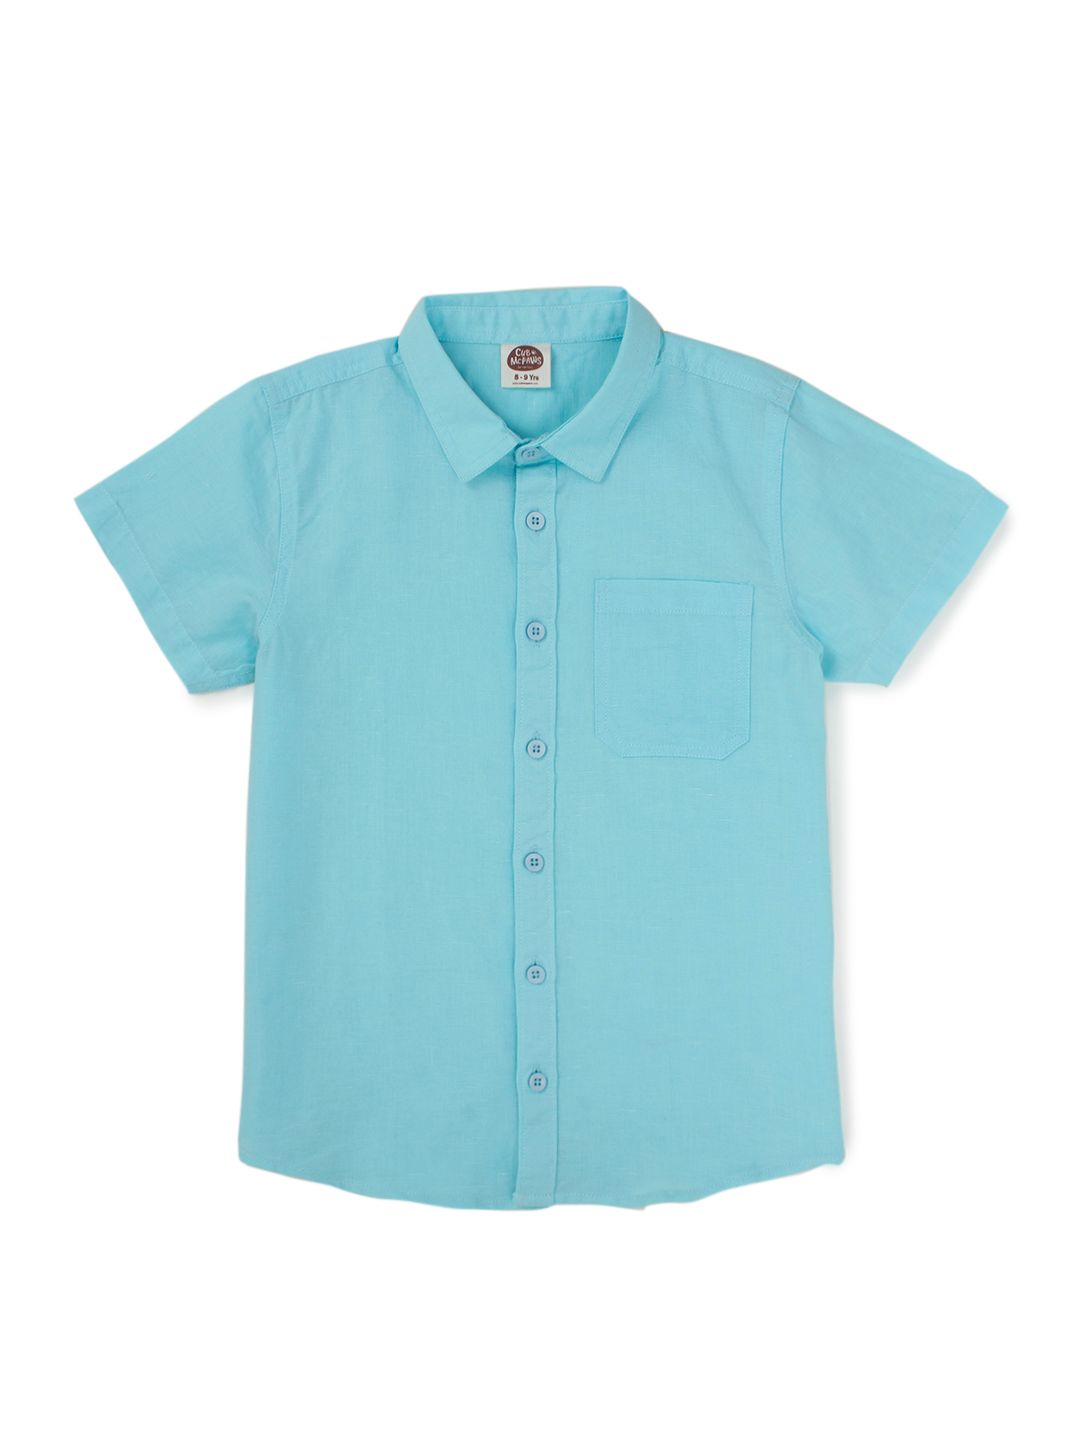 Boys Cotton Linen Shirt - Aqua Blue (EOSS)